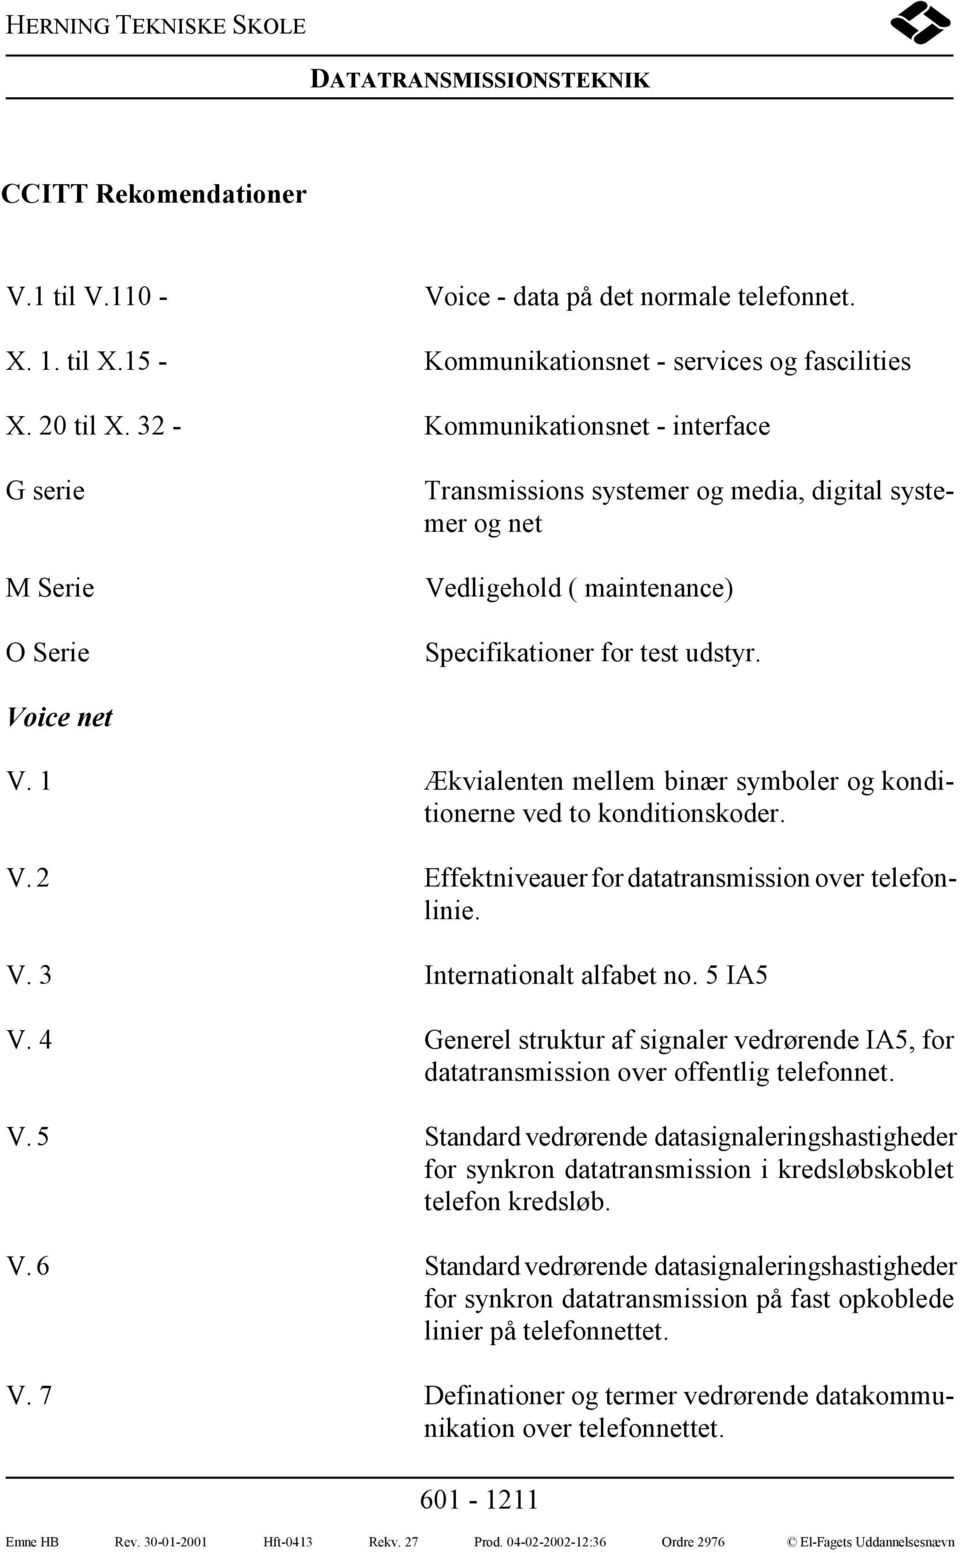 1 Ækvialenten mellem binær symboler og konditionerne ved to konditionskoder. V. 2 Effektniveauer for datatransmission over telefonlinie. V. 3 Internationalt alfabet no. 5 IA5 V.